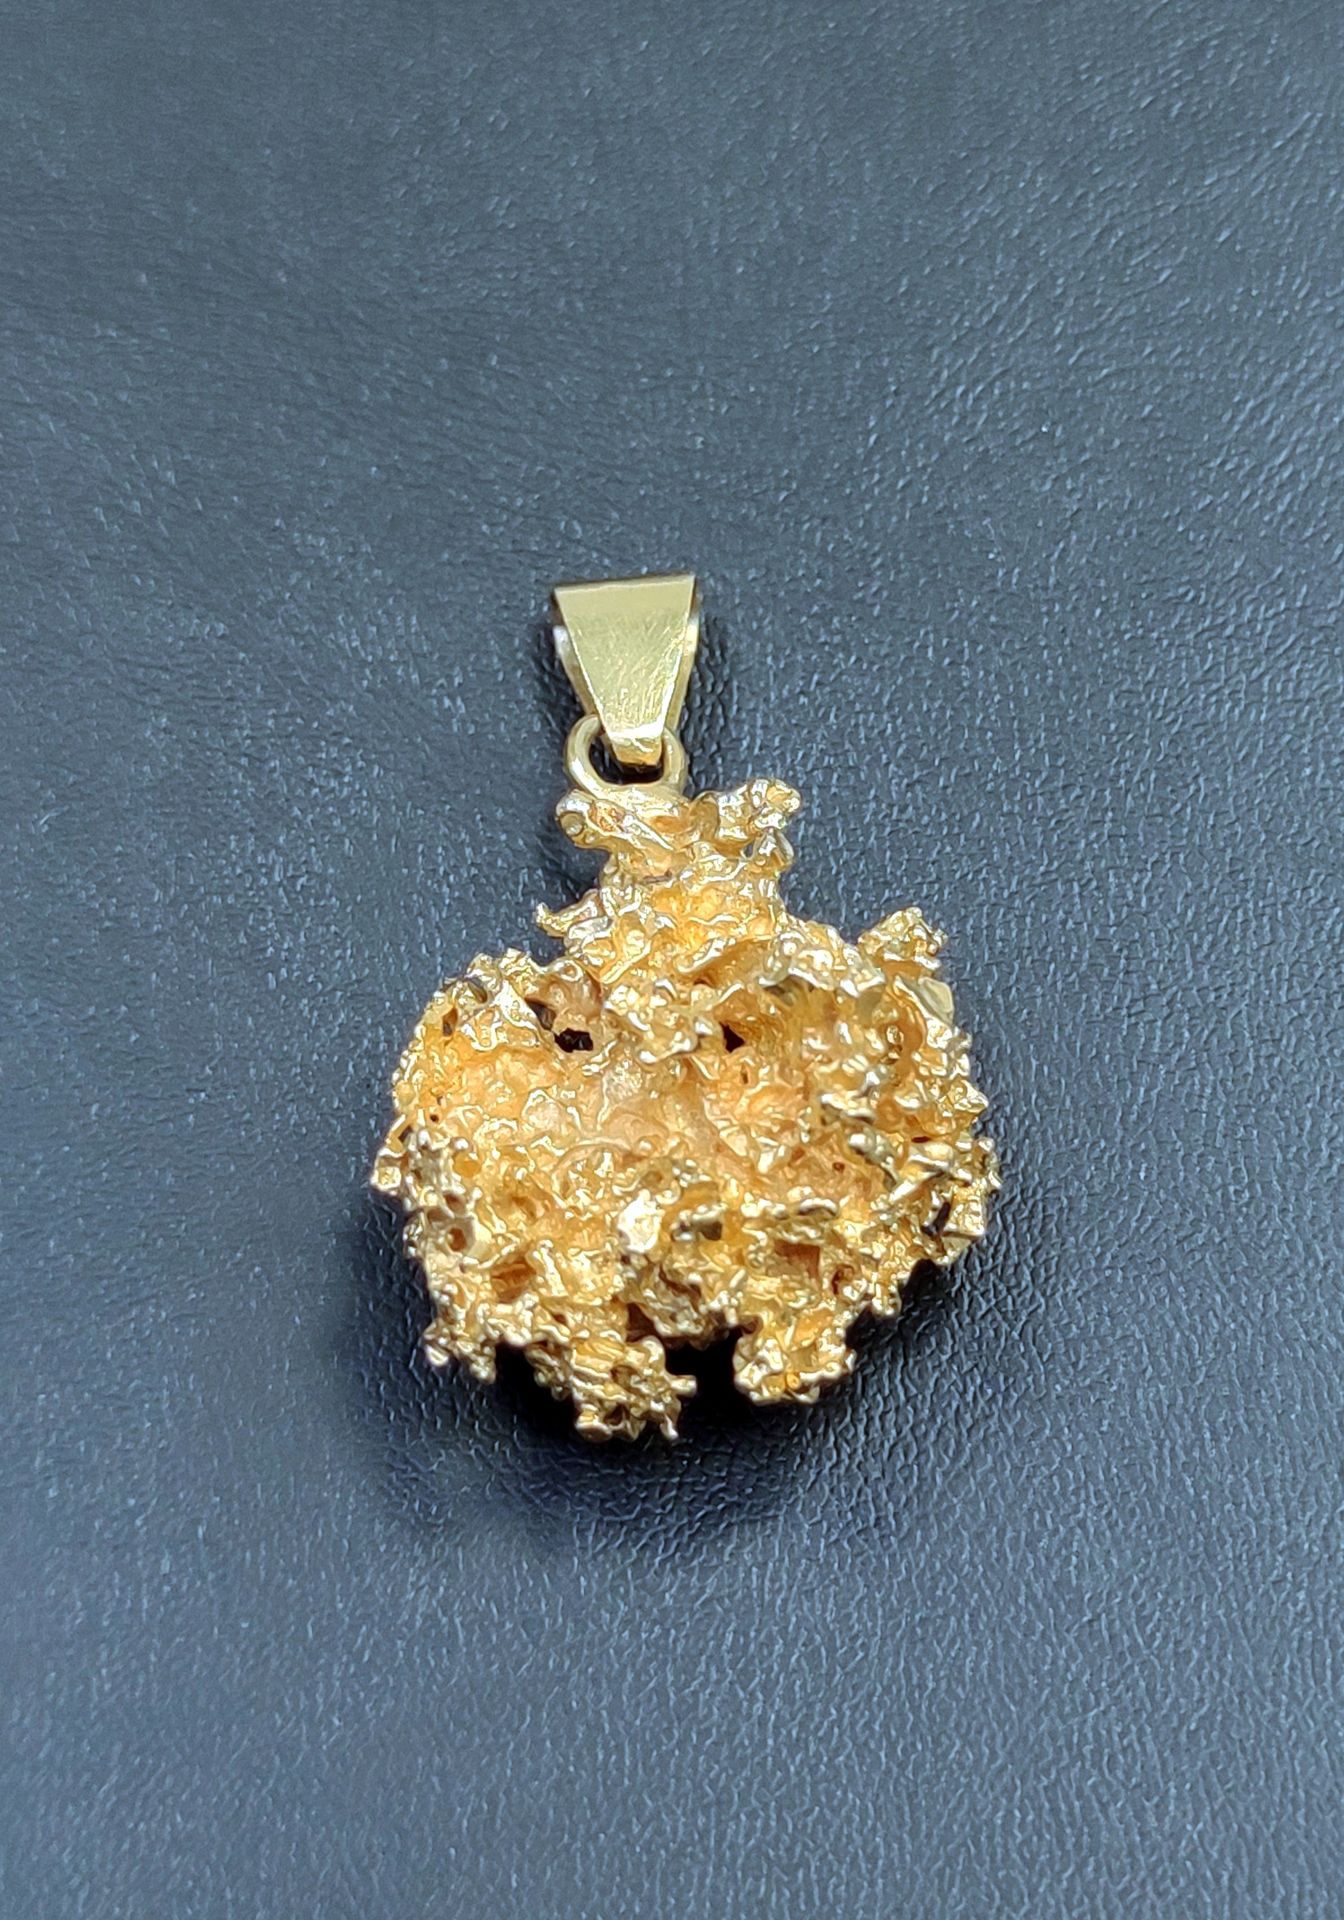 Null 
Ciondolo "PEPITE" in oro giallo

Peso: 30,1 g

Lunghezza: 3 cm